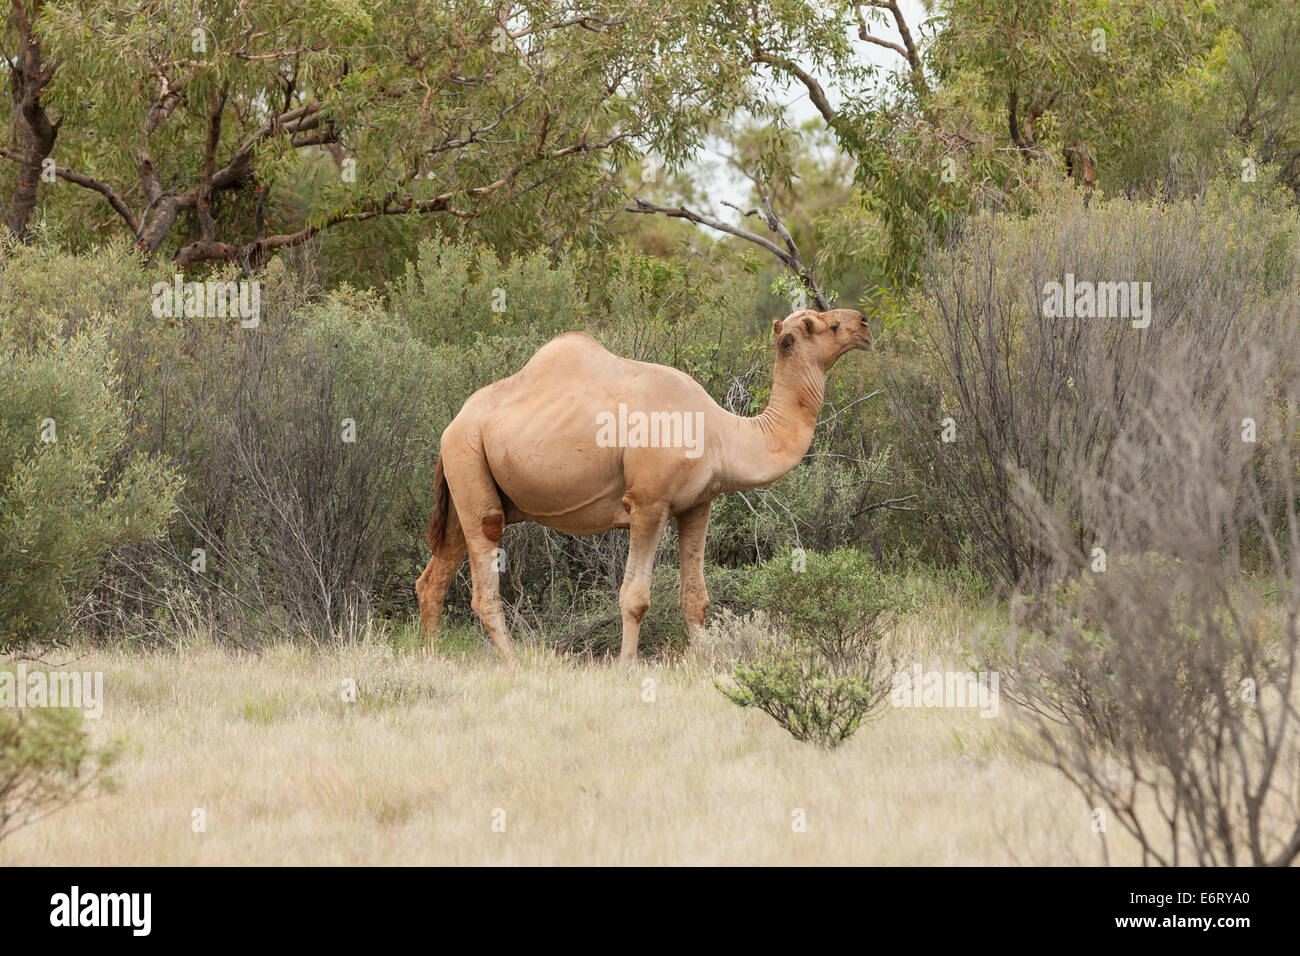 Le chameau sauvage un taureau dans le centre rouge de l'Australie est tranquillement de manger les feuilles des arbustes et des arbres autour de lui Banque D'Images